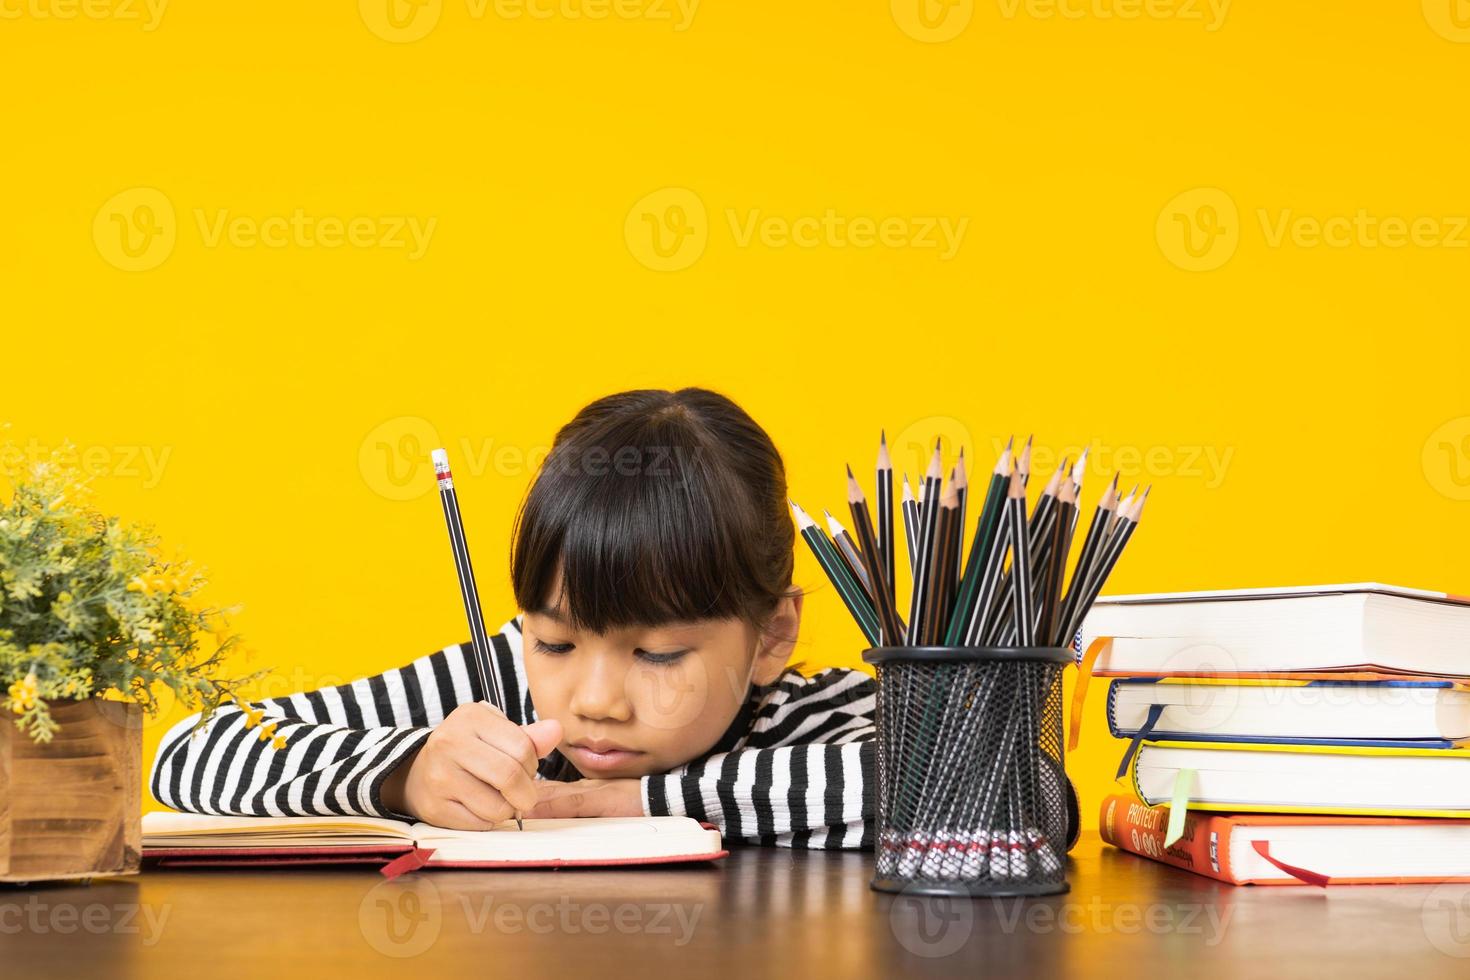 giovane ragazza asiatica scrivendo in un taccuino accanto alla pila di libri, tazza di matite e fiori con sfondo giallo foto